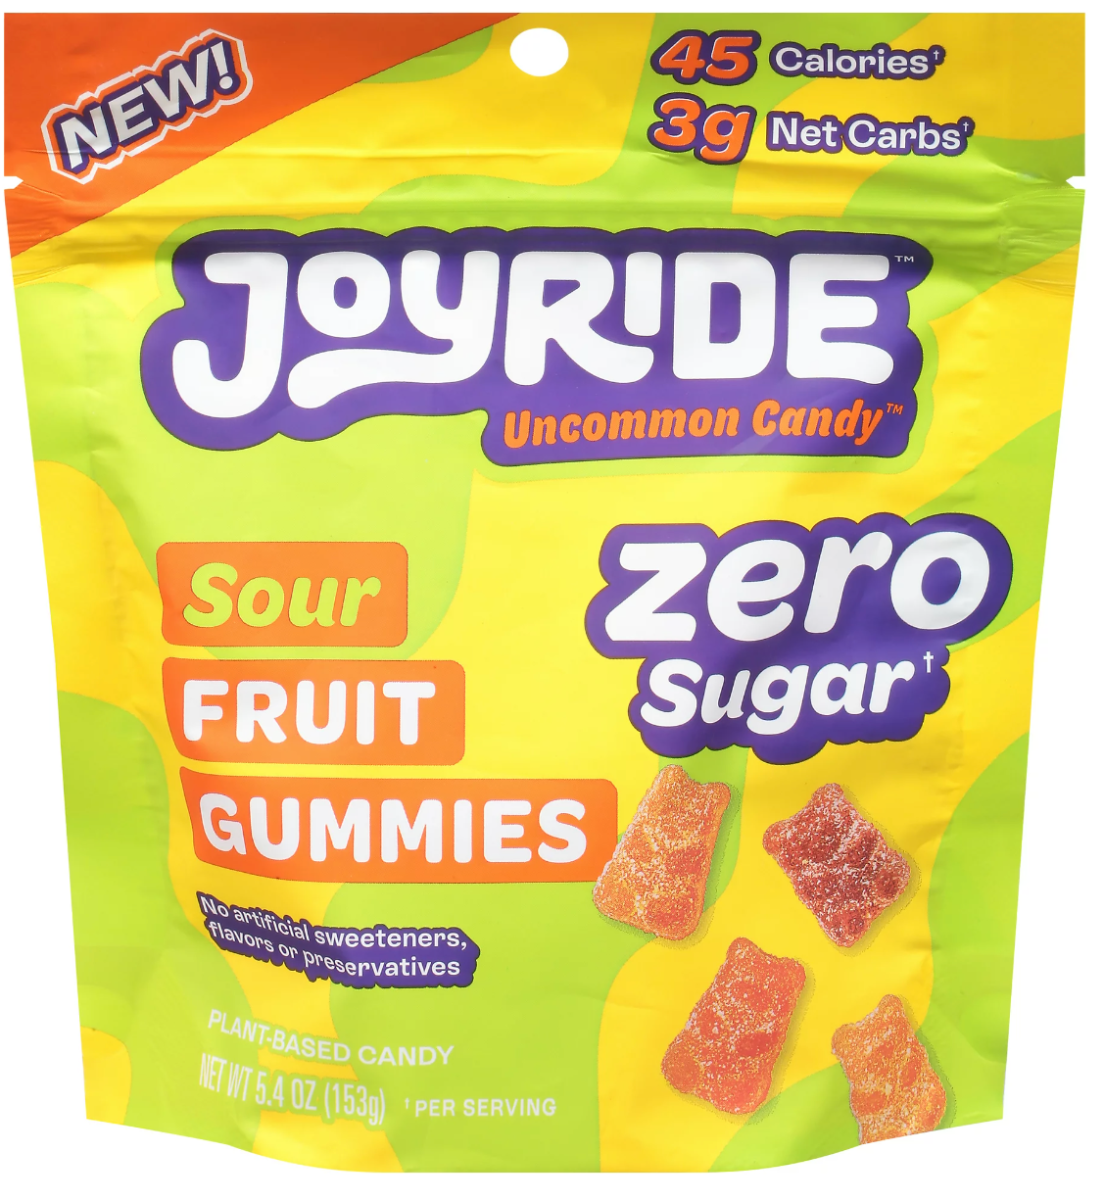 Picture of Joyride KHCH02208950 5.4 oz Sour Fruit Zero Gummies